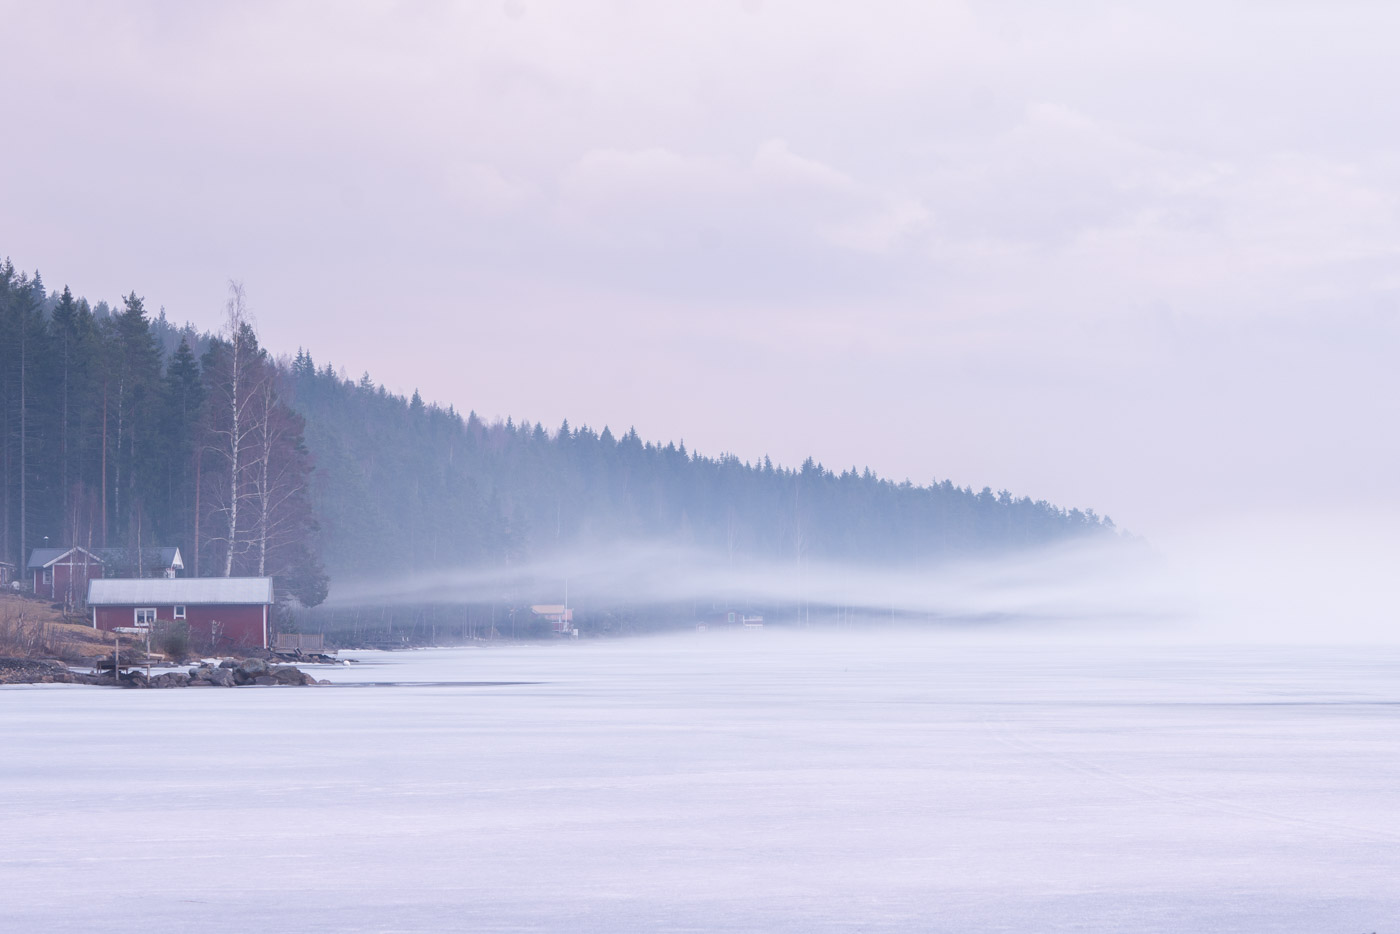 Swedish cabin by a frozen misty lake